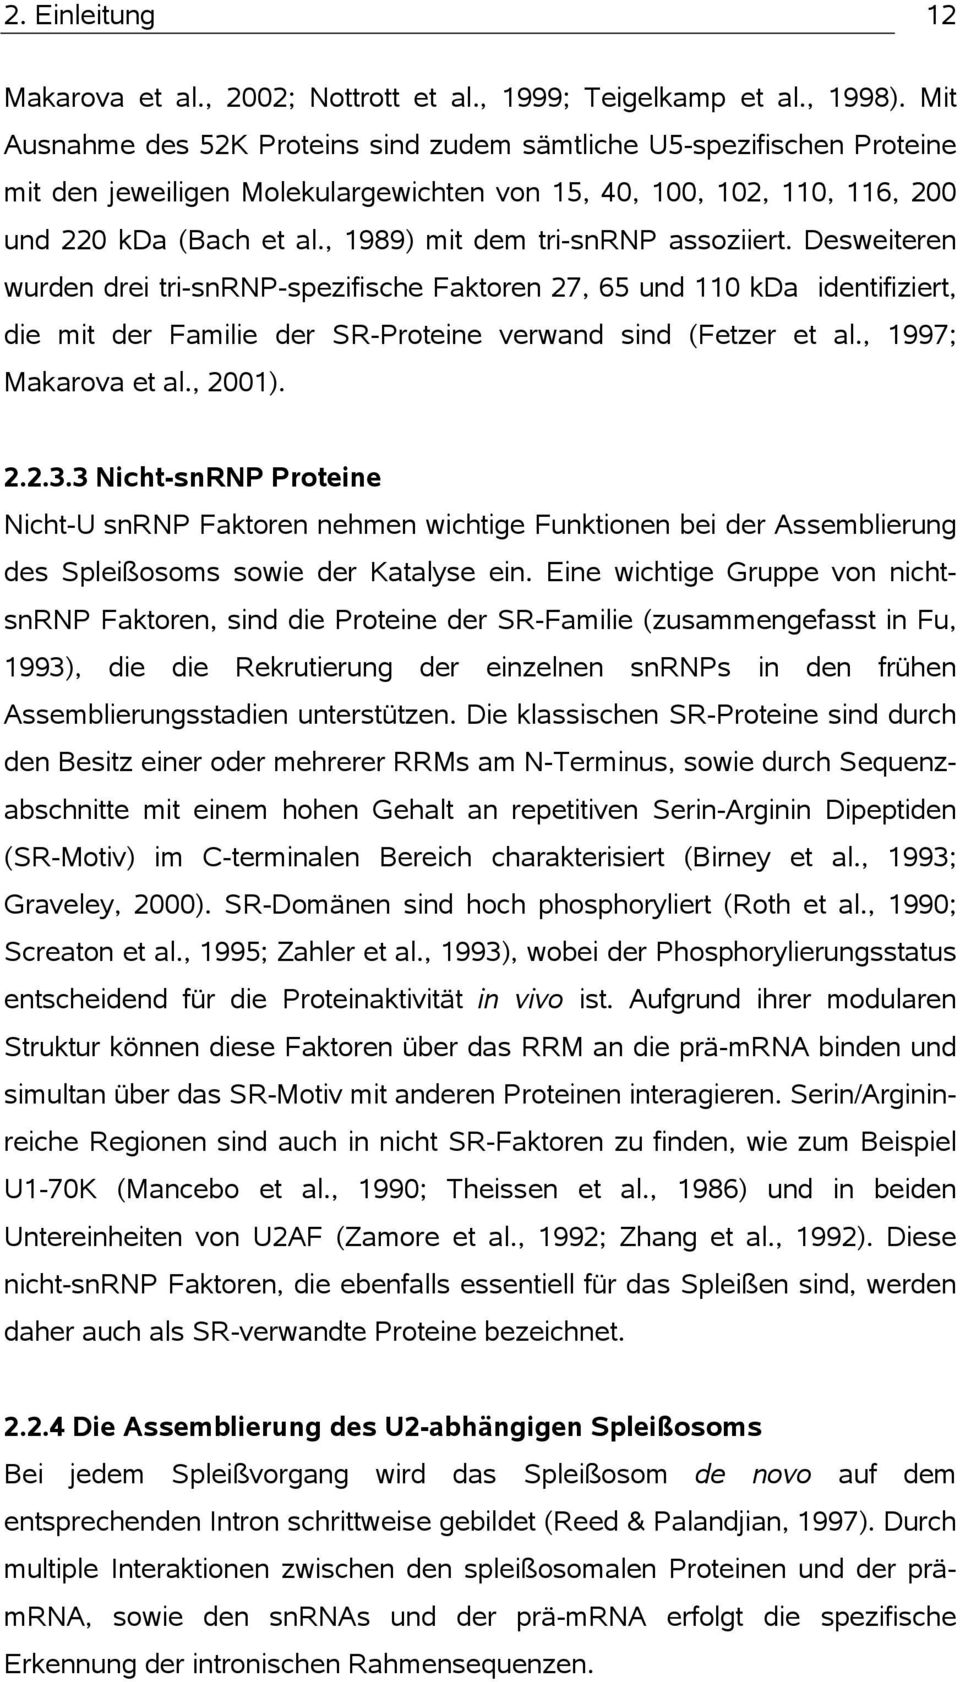 , 1989) mit dem tri-snrnp assoziiert. Desweiteren wurden drei tri-snrnp-spezifische Faktoren 27, 65 und 110 kda identifiziert, die mit der Familie der SR-Proteine verwand sind (Fetzer et al.